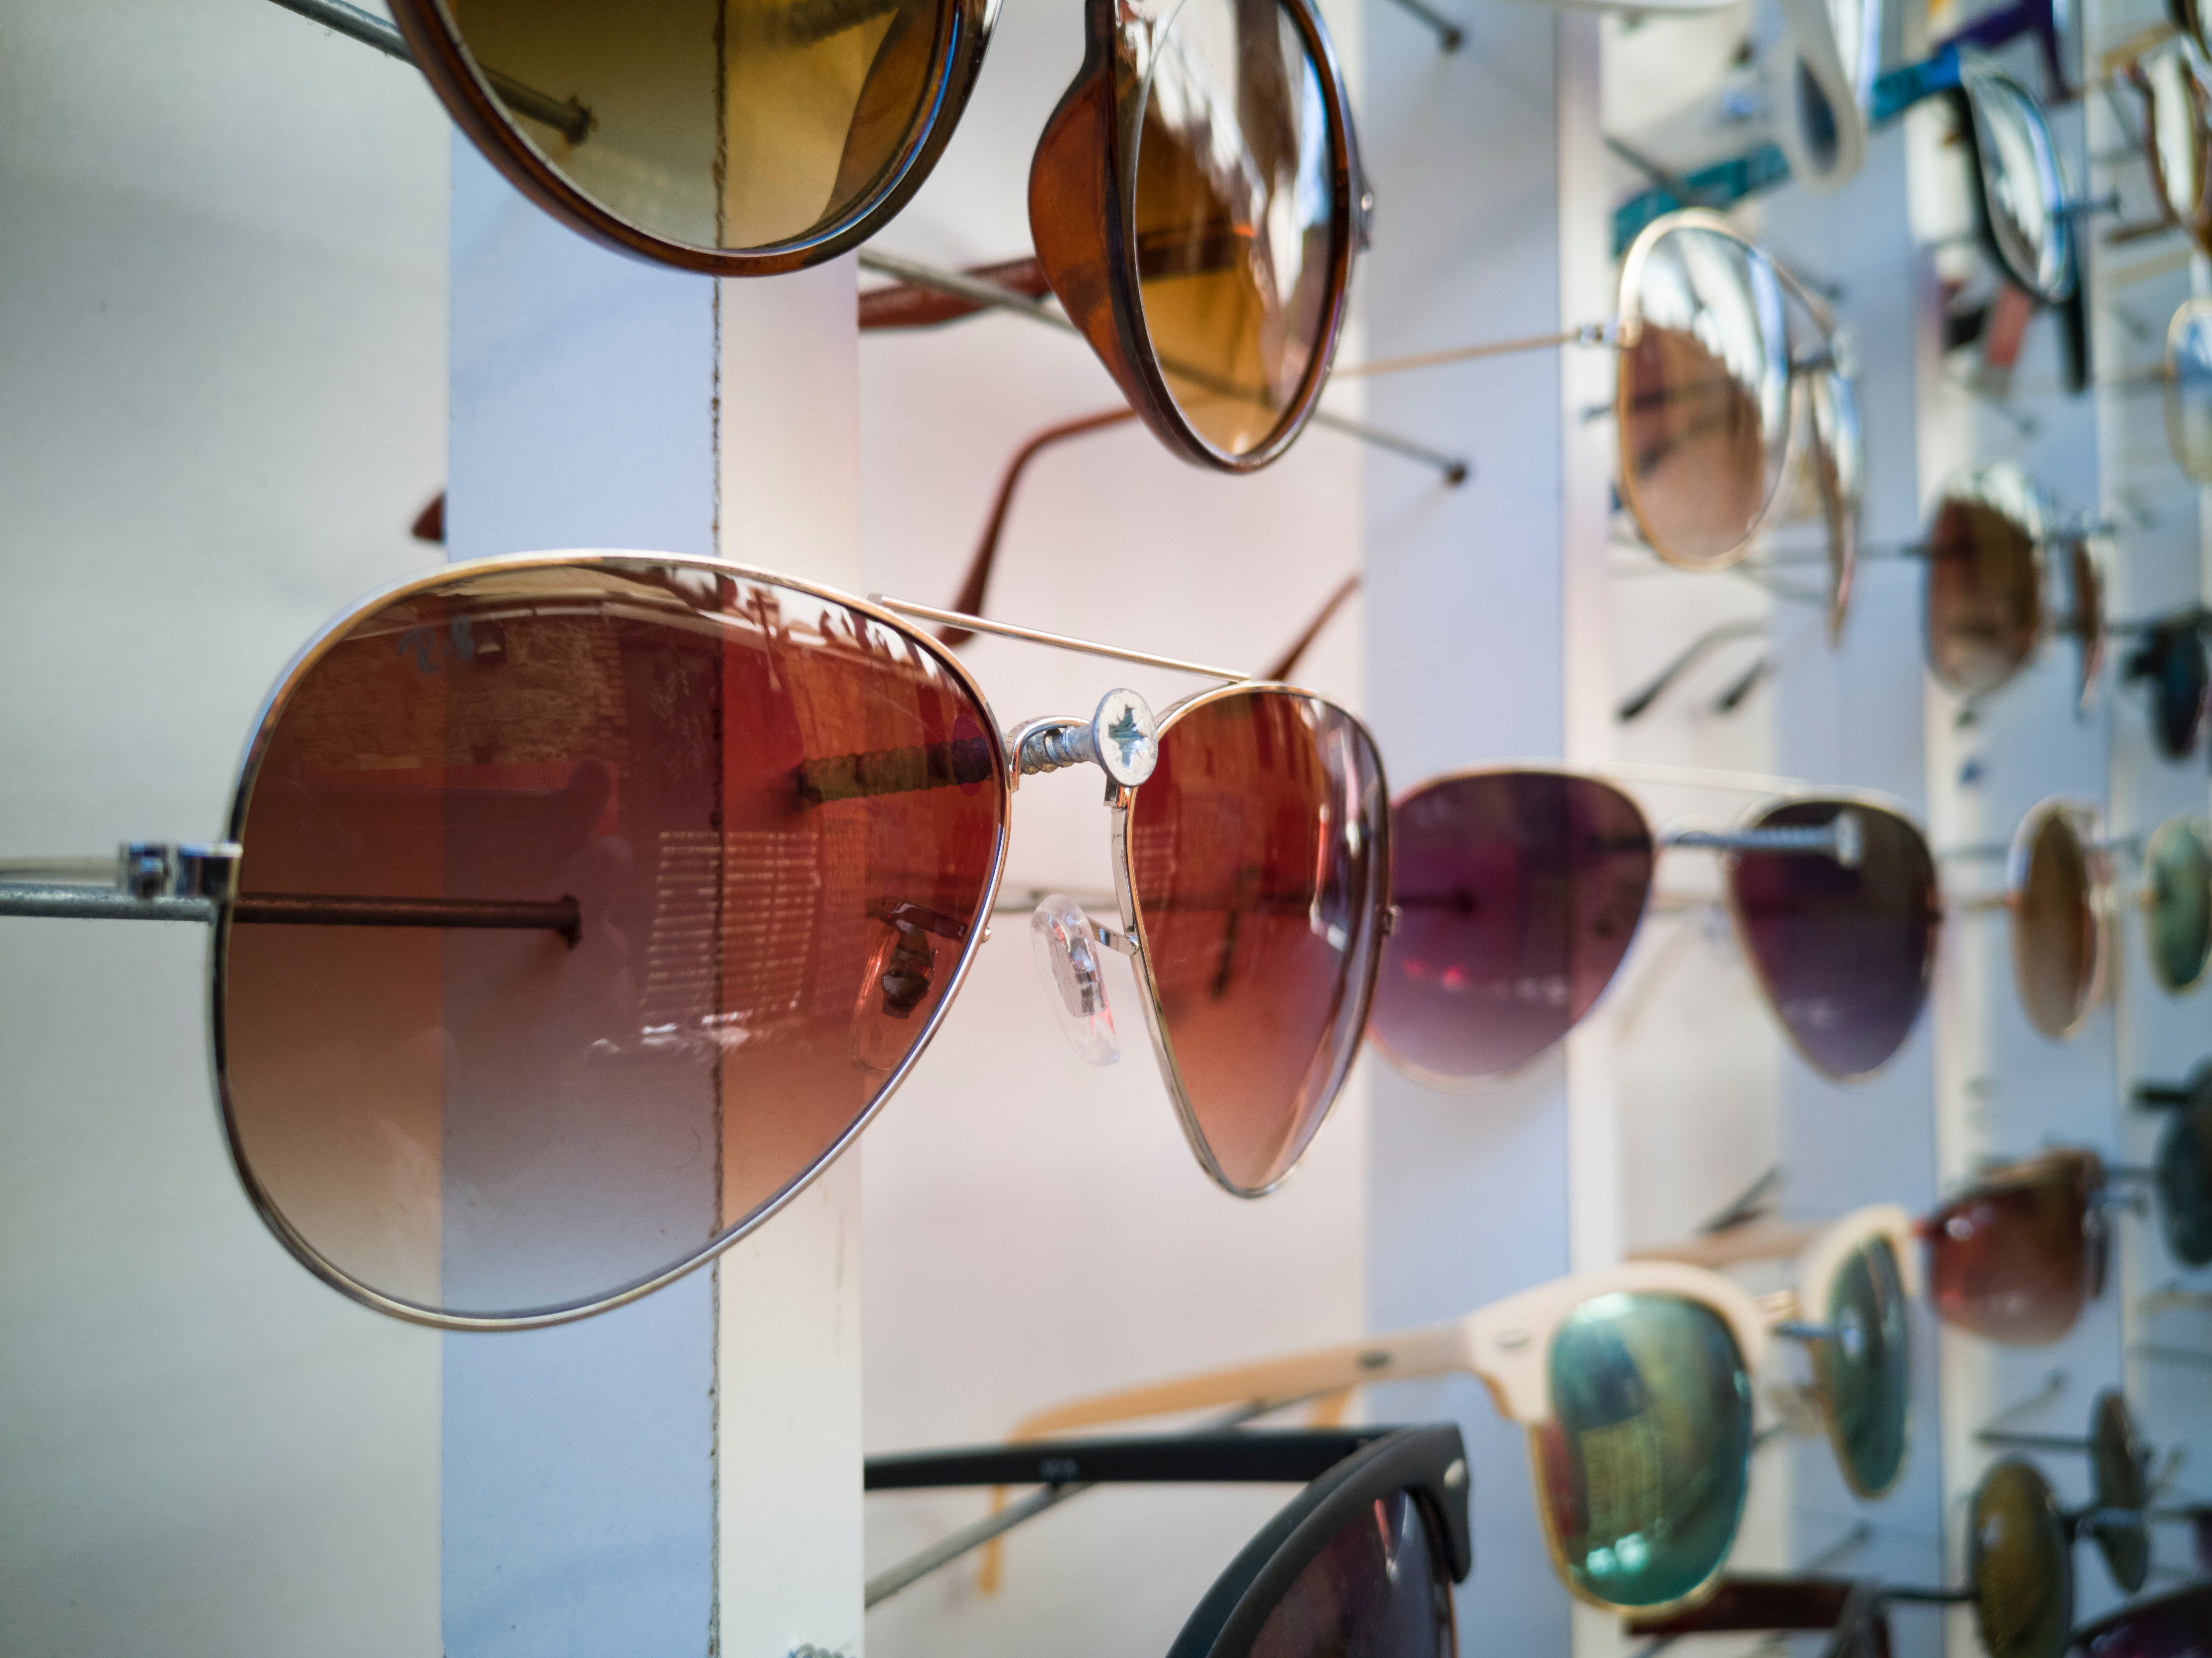 Tanie okulary przeciwsłoneczne - czy warto?